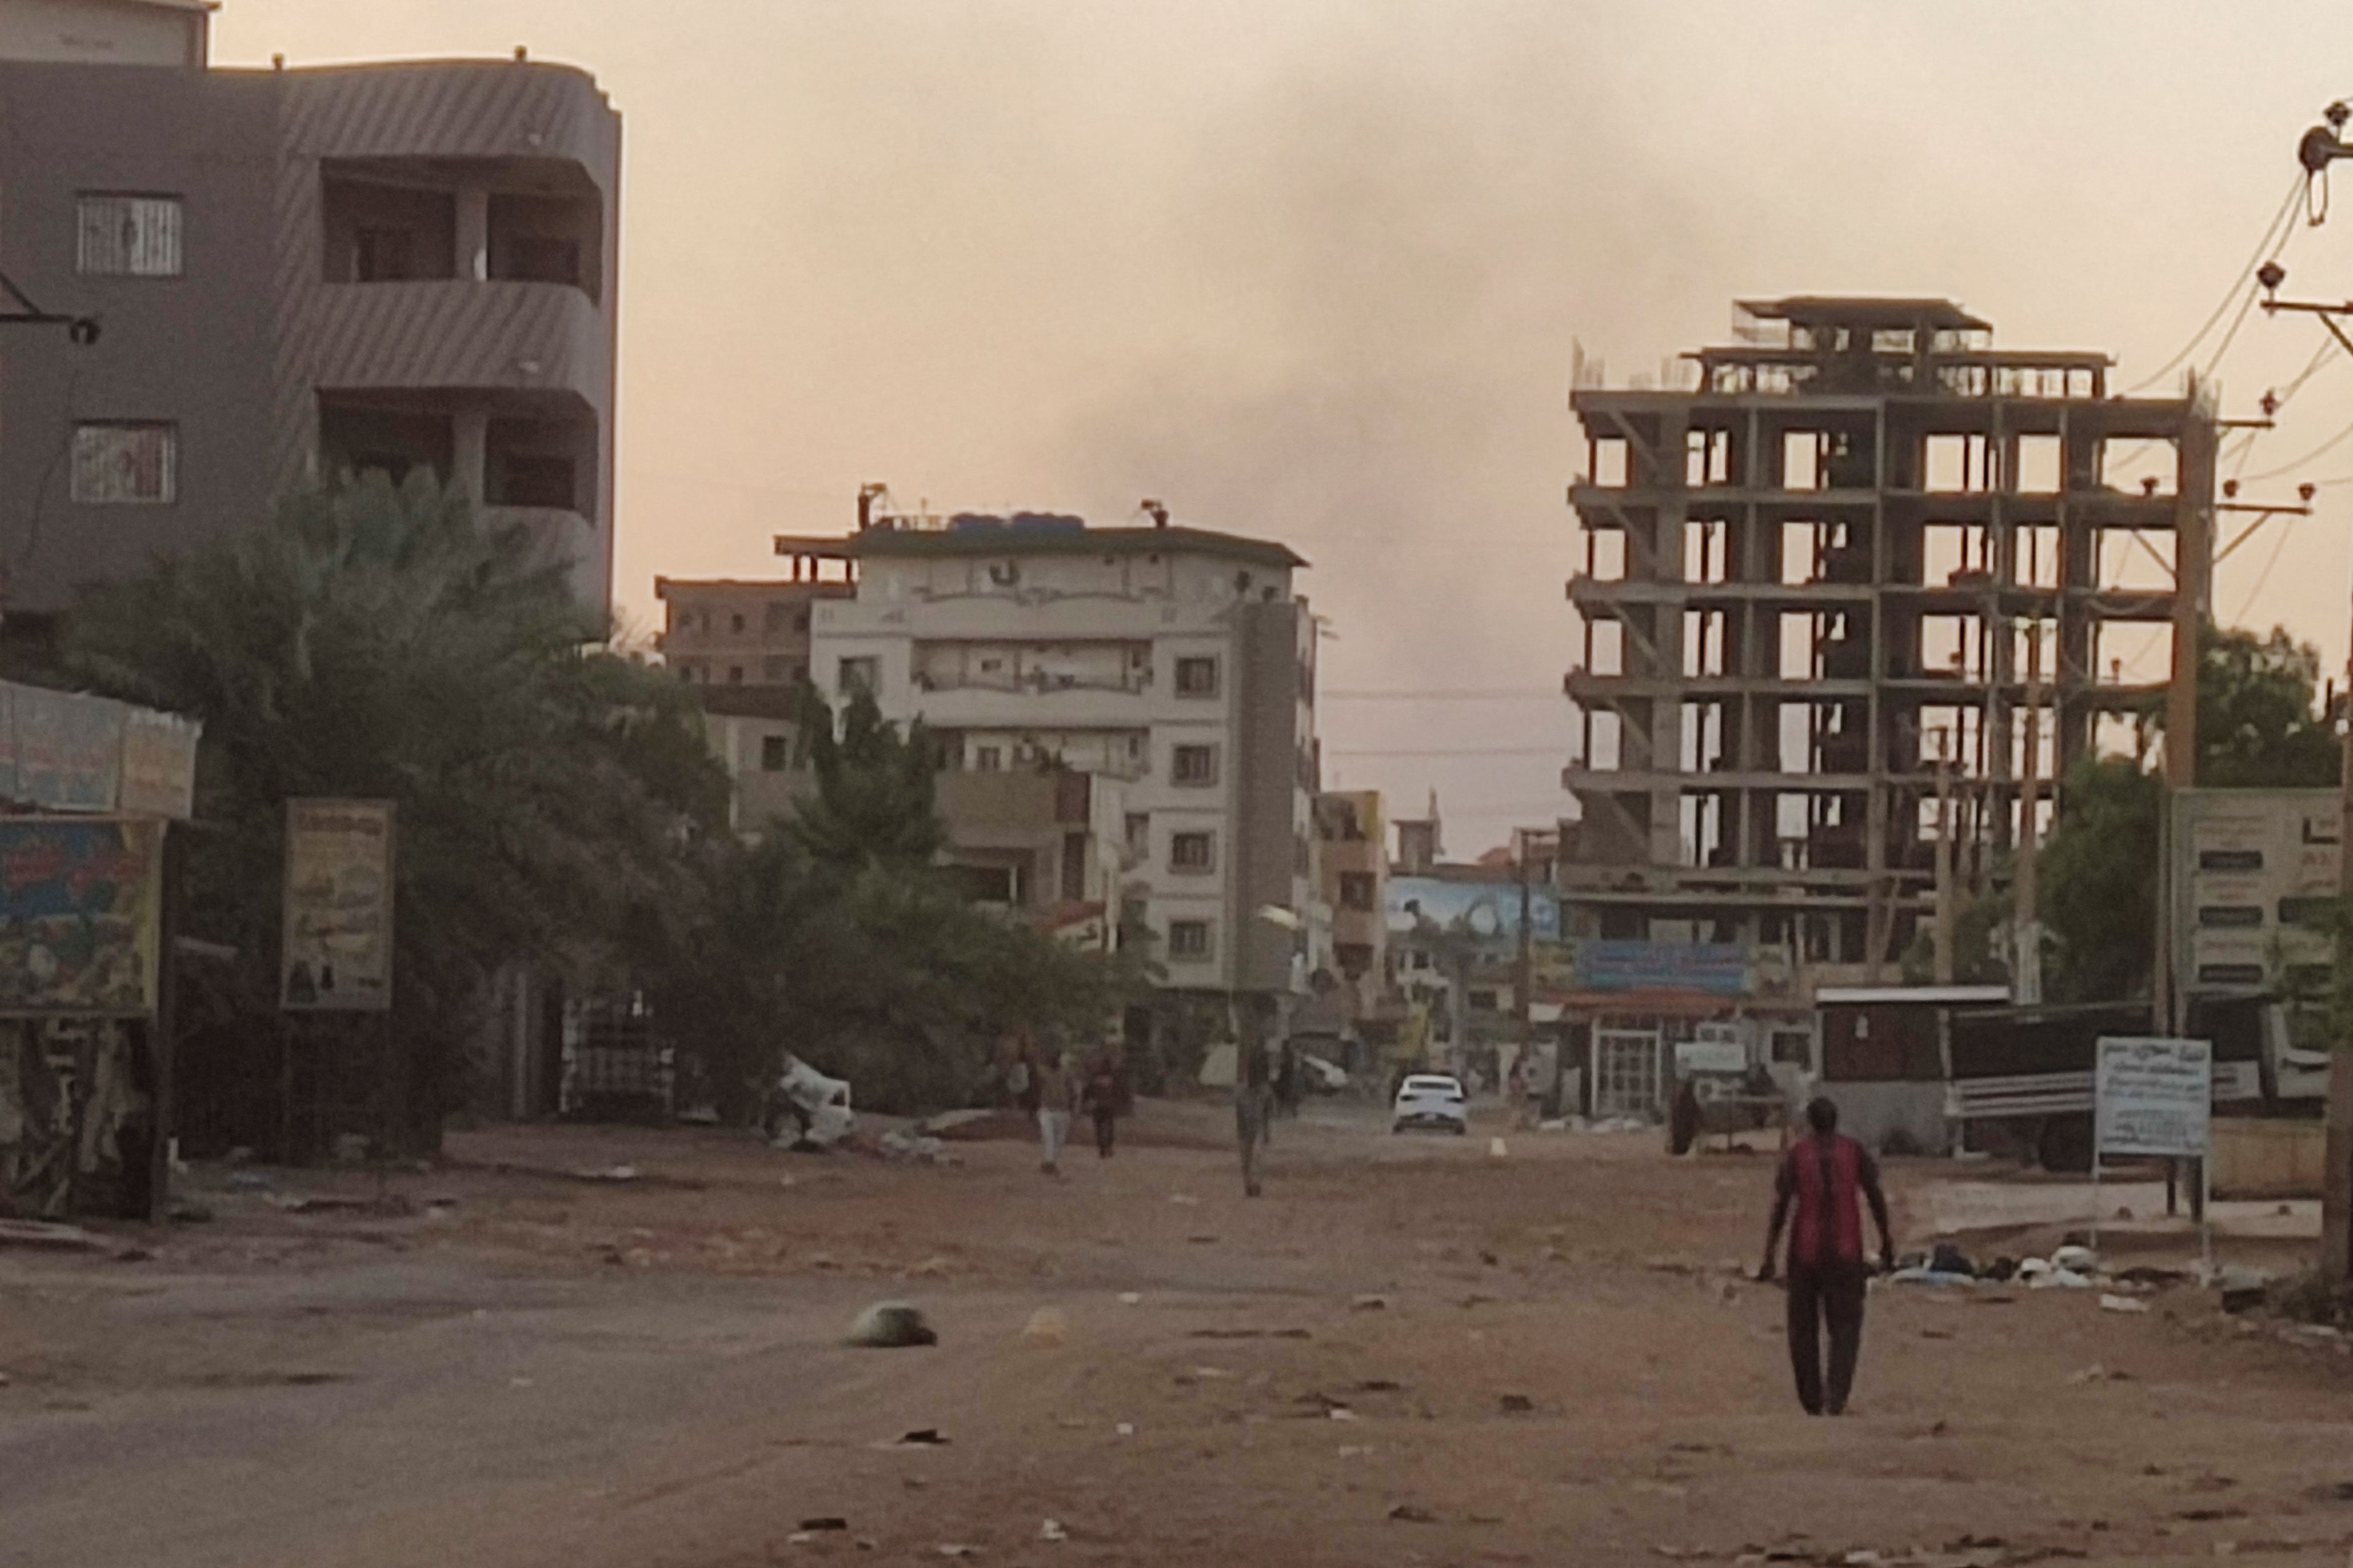 Empty street in Sudan